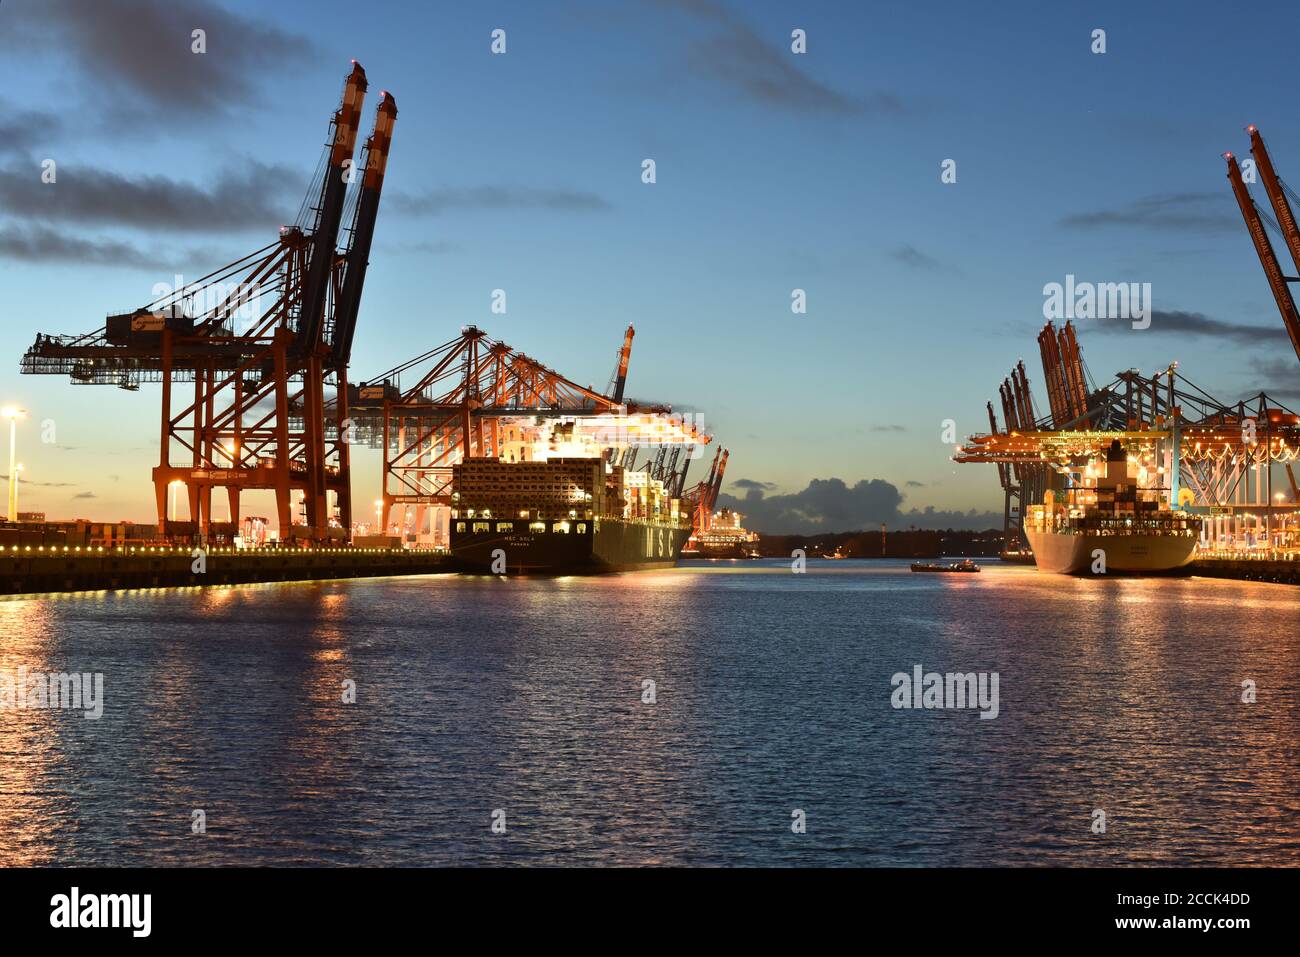 Transport und Logistik auf dem Wasser - Verladung von Schiffen in Ein Hafen mit Waren für den Export Stockfoto